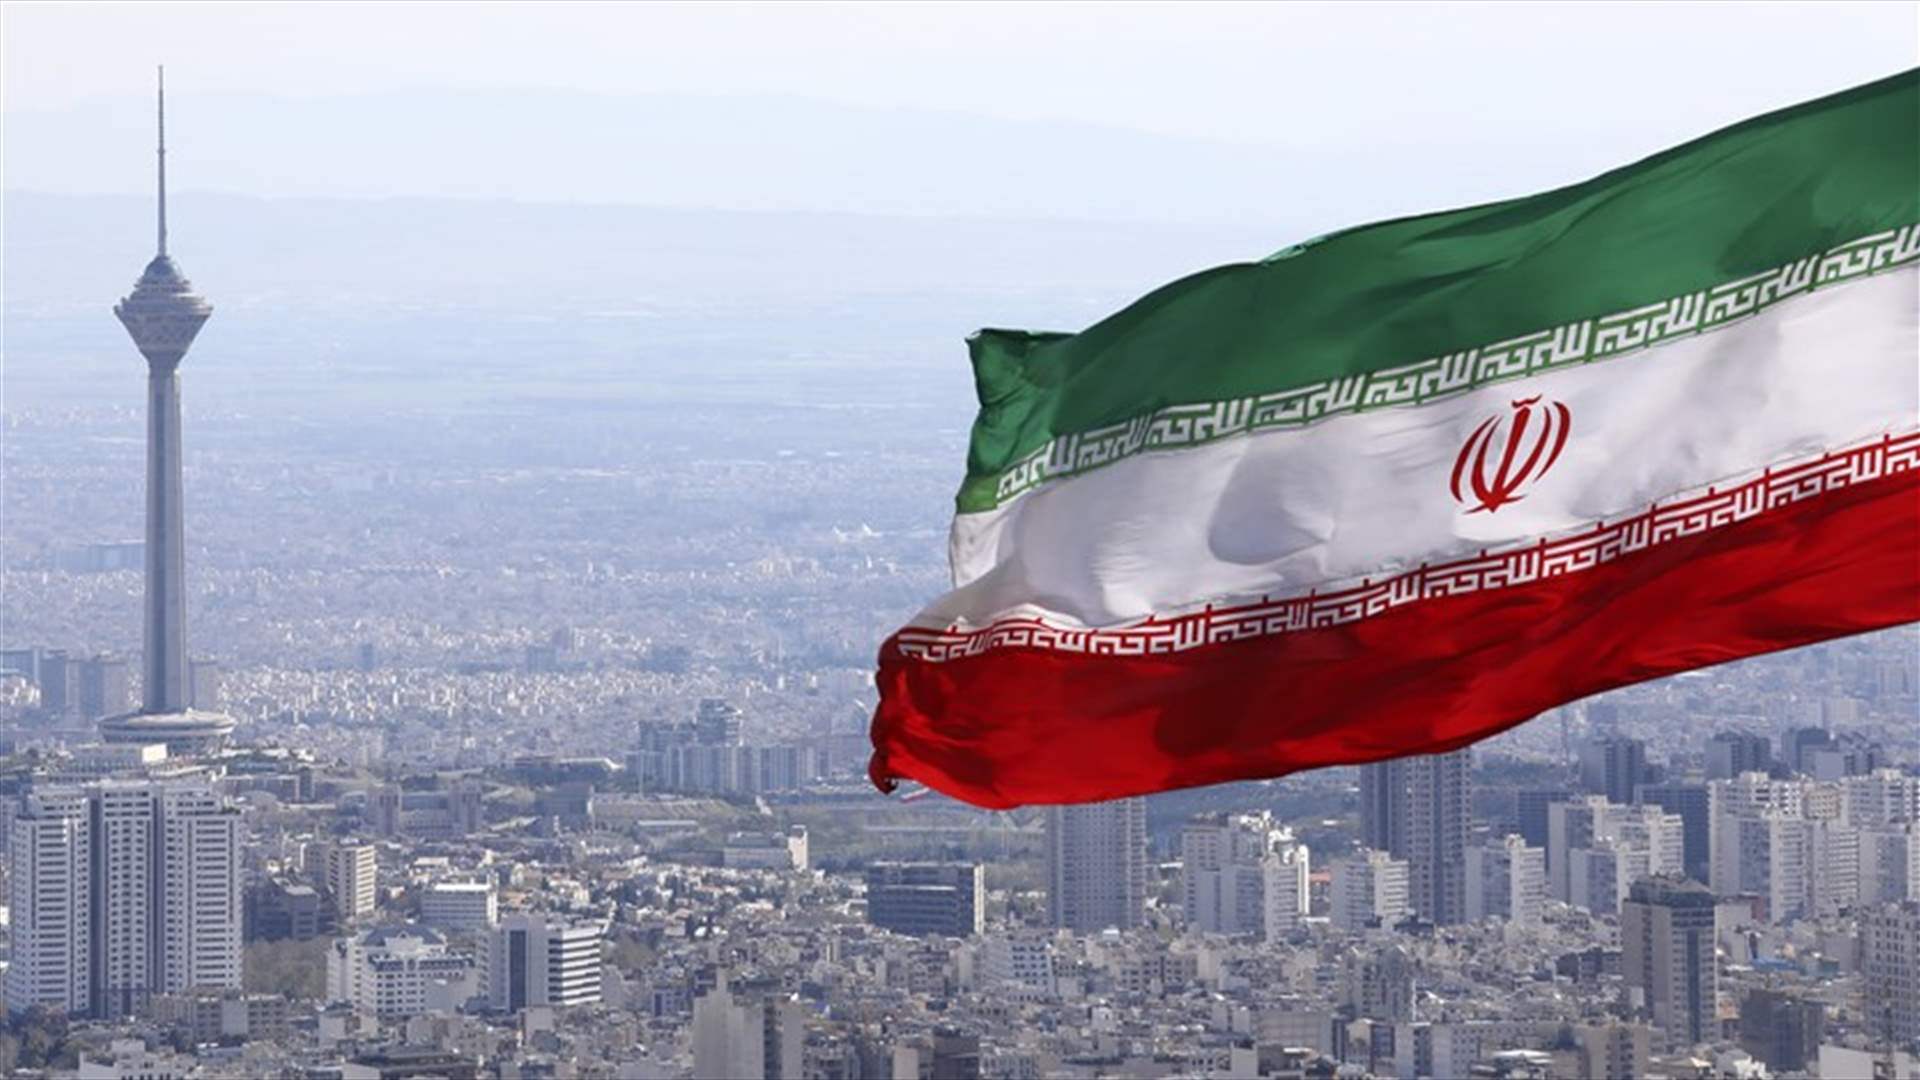 إيران تطلق بنجاح ثلاثة أقمار صناعية بشكل متزامن  